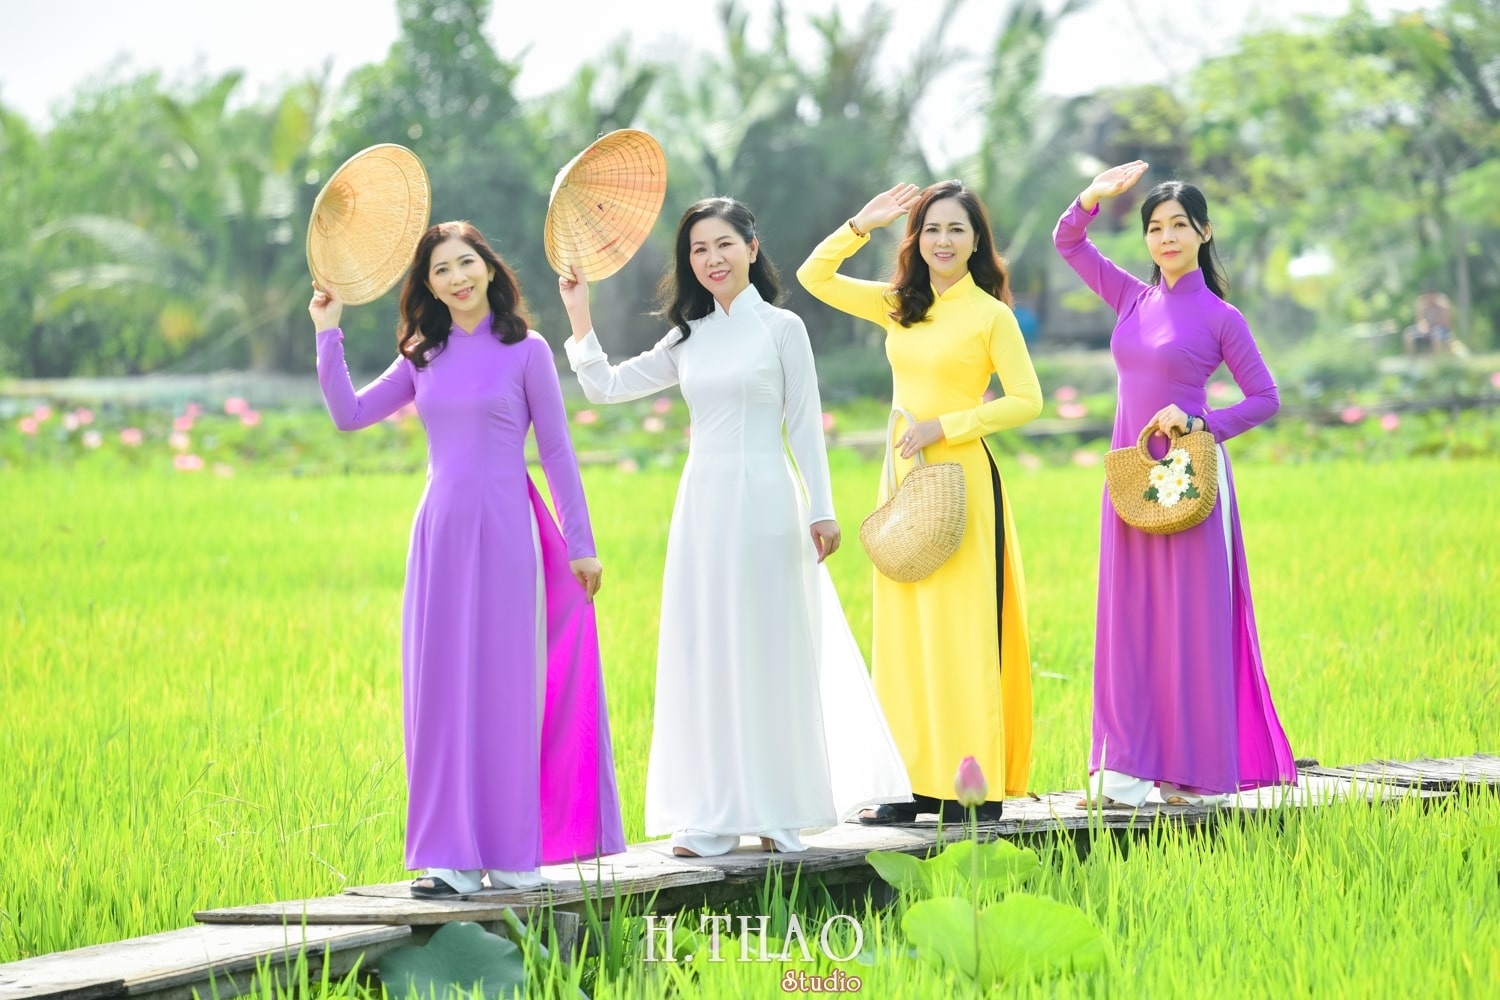 Anh Hoa sen 20 min - Album ảnh áo dài tập thể nam nữ đẹp nhí nhảnh - HThao Studio